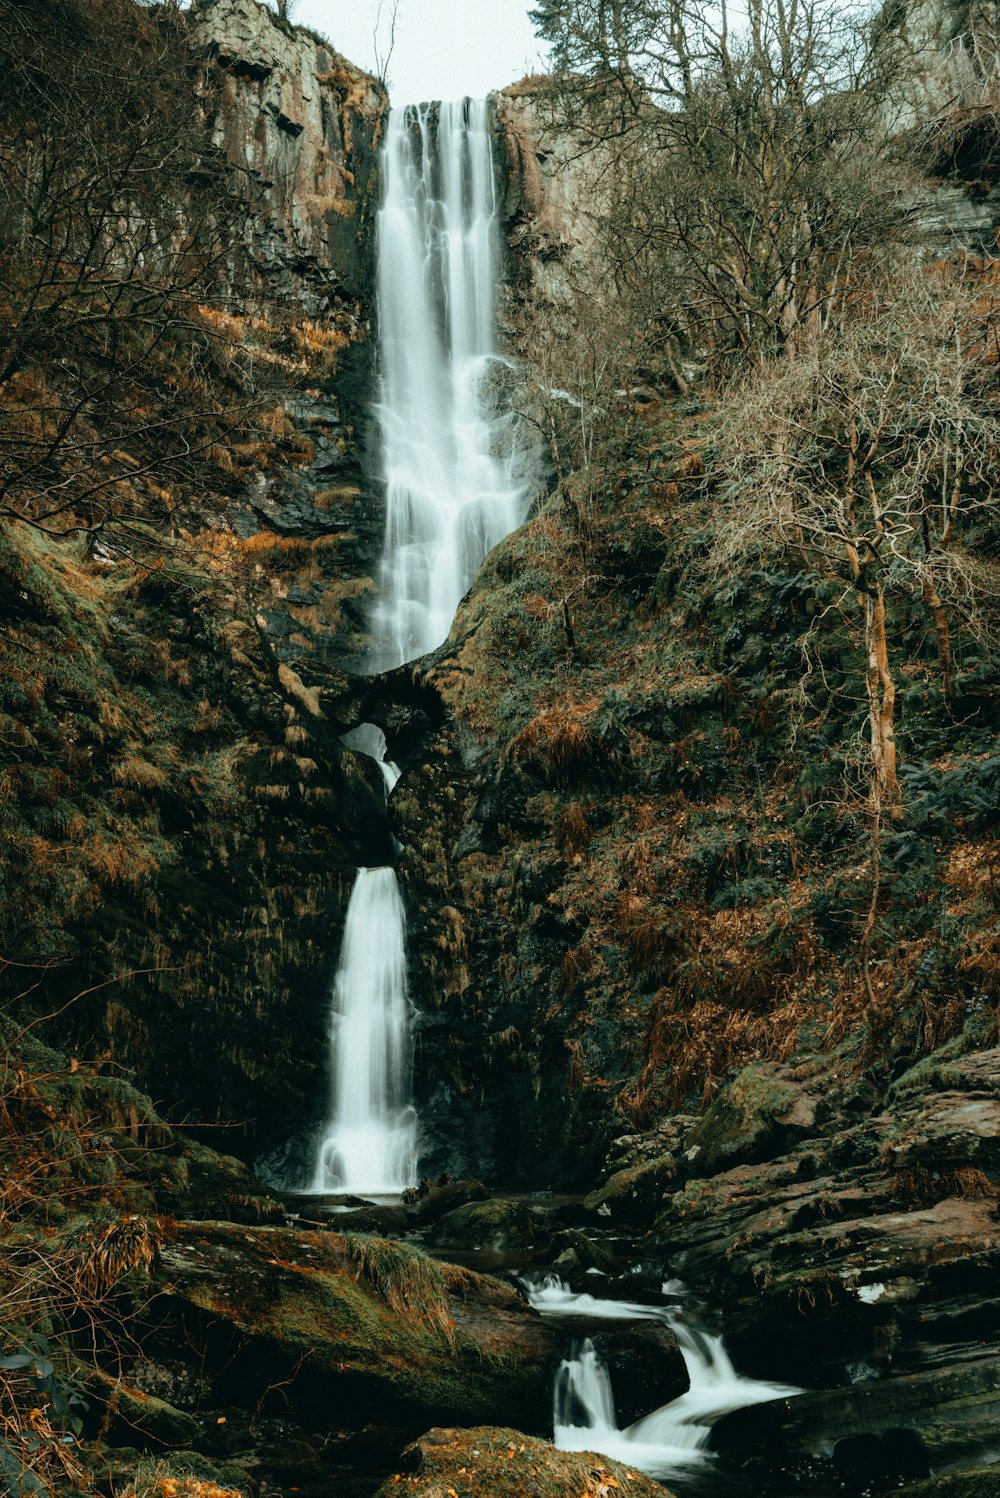 Una cascata nel mezzo di una foresta